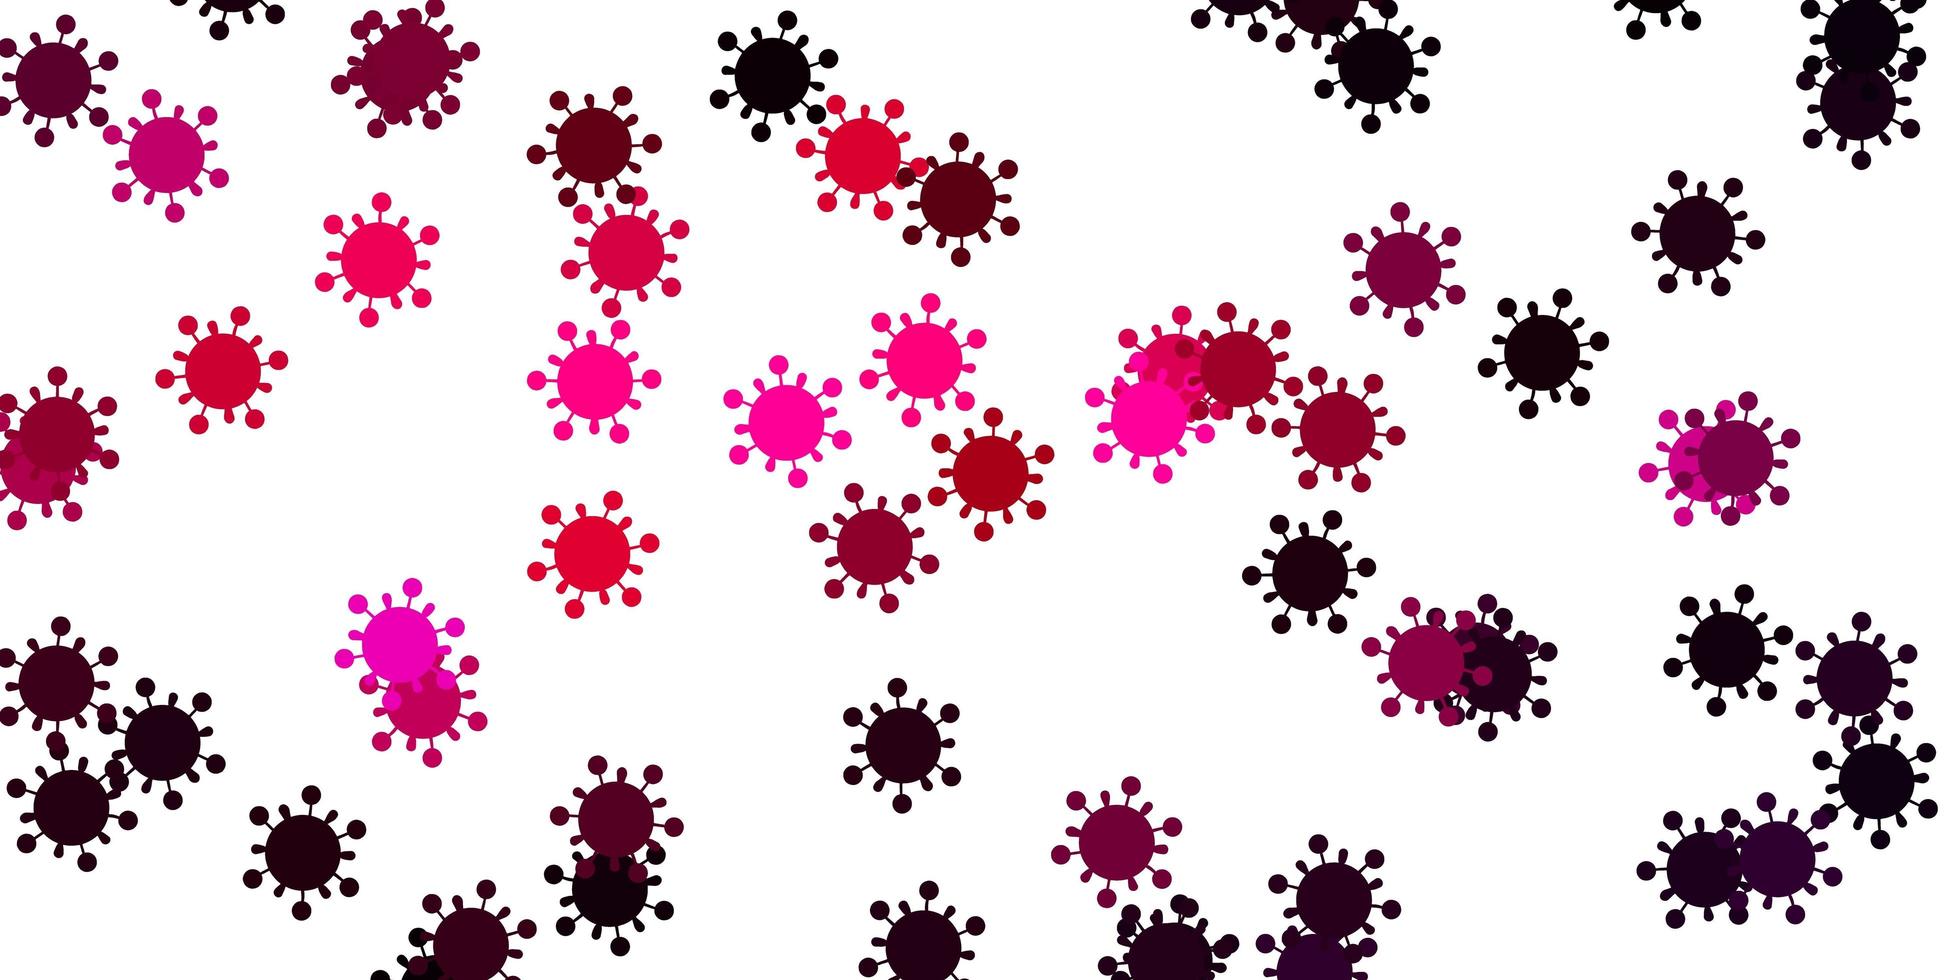 sfondo vettoriale rosa chiaro con simboli di virus.